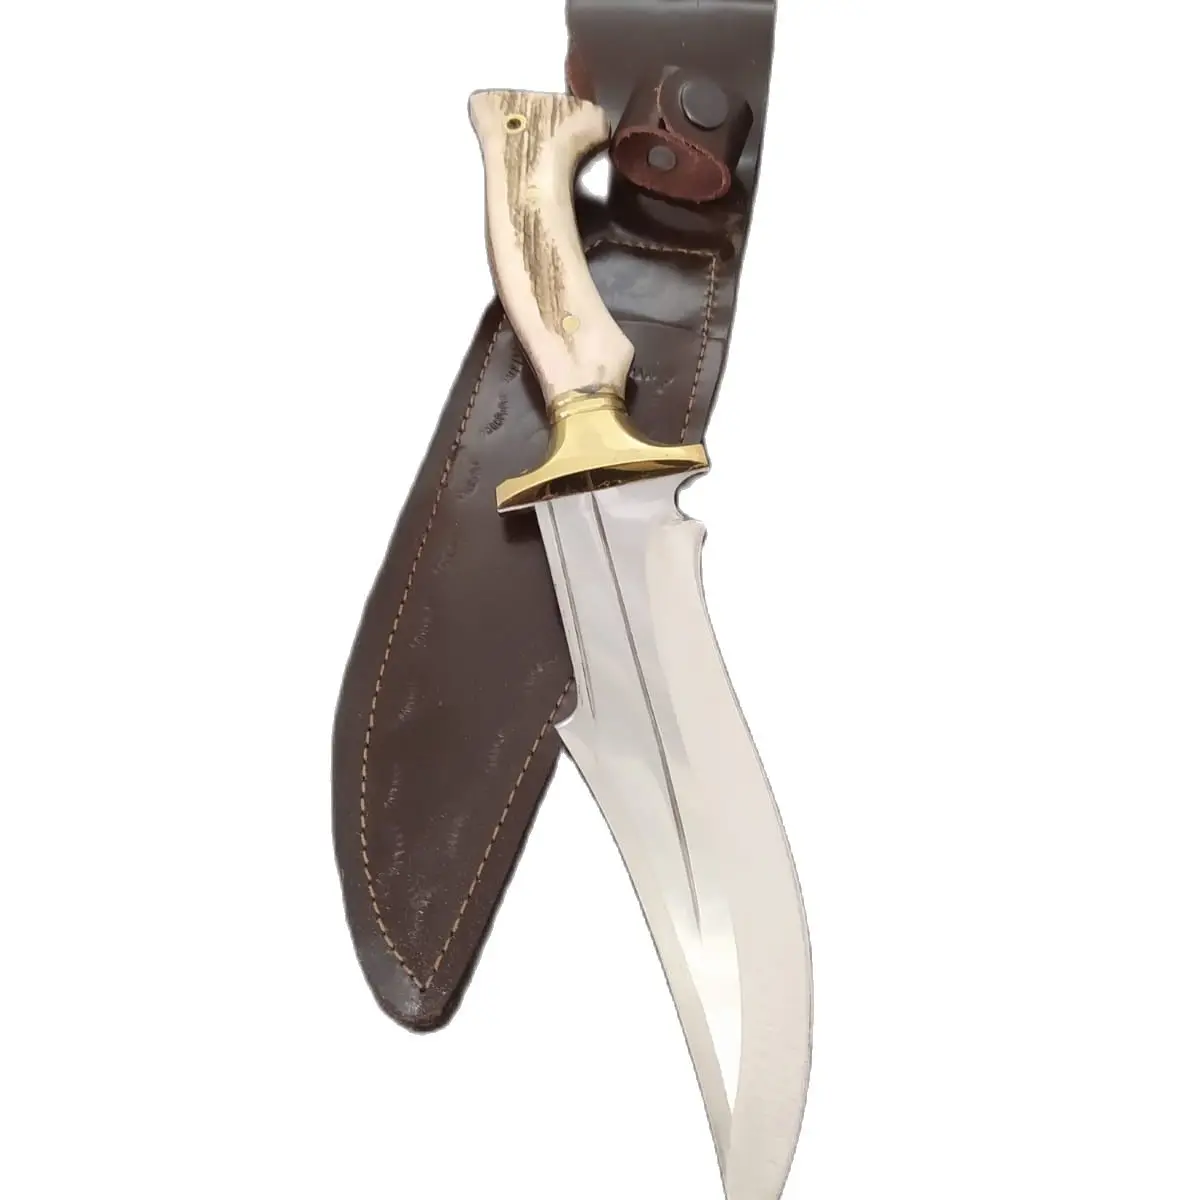 

Hrbi Олень Рог ручка охотничий нож rambo, Выживание обороны, бушкрафт, Боуи, тактические фиксированные ножи, острые лезвия, подарок для мужа